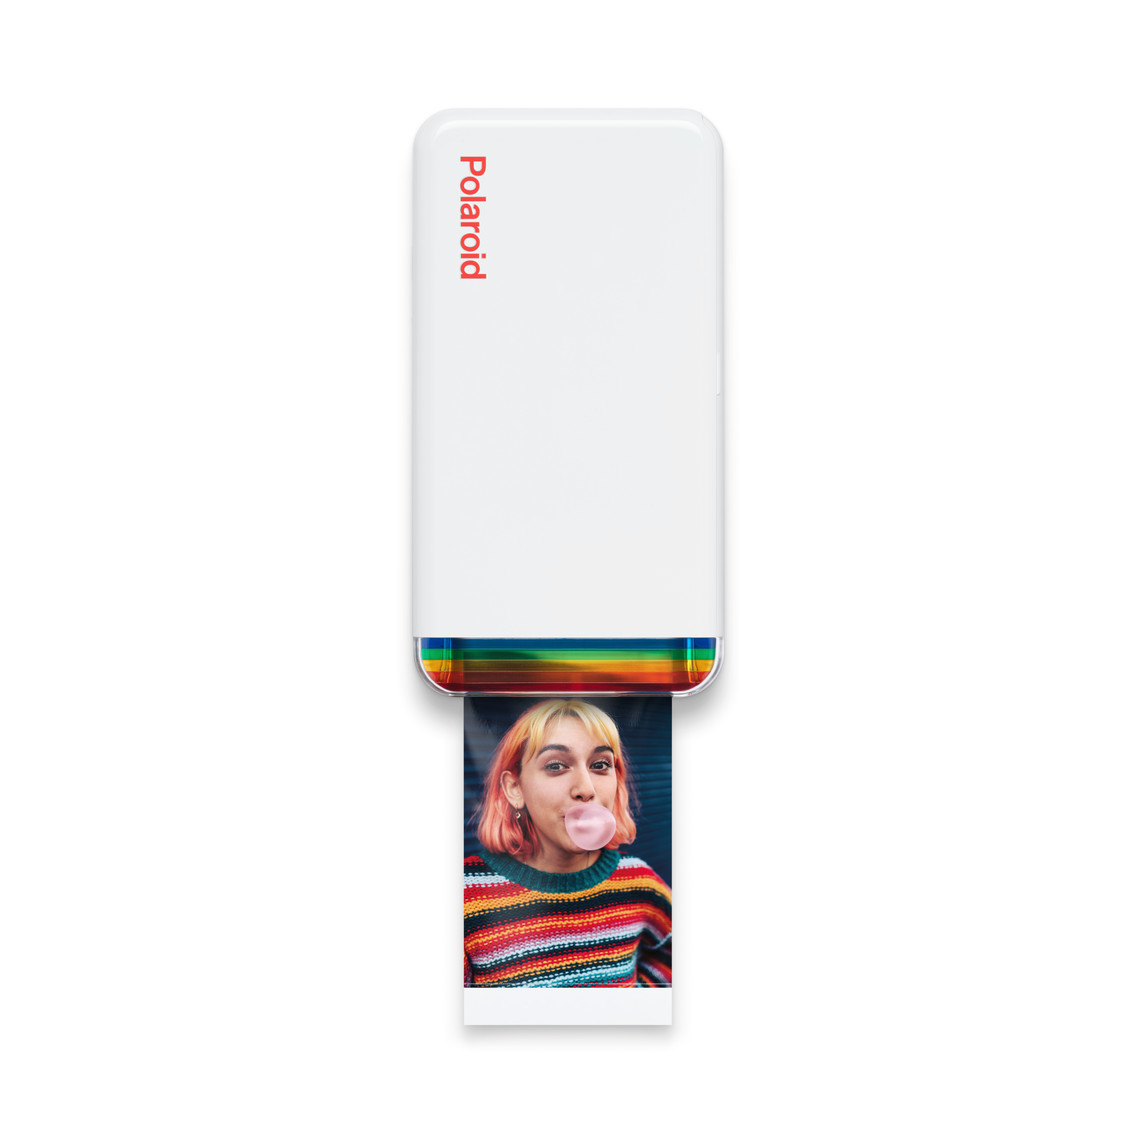 Fotoskrivaren Polaroid Hi-Print 2x3 förvandlar dina bilder från iPhone-kamerarullen till färgutskrifter av högsta kvalitet